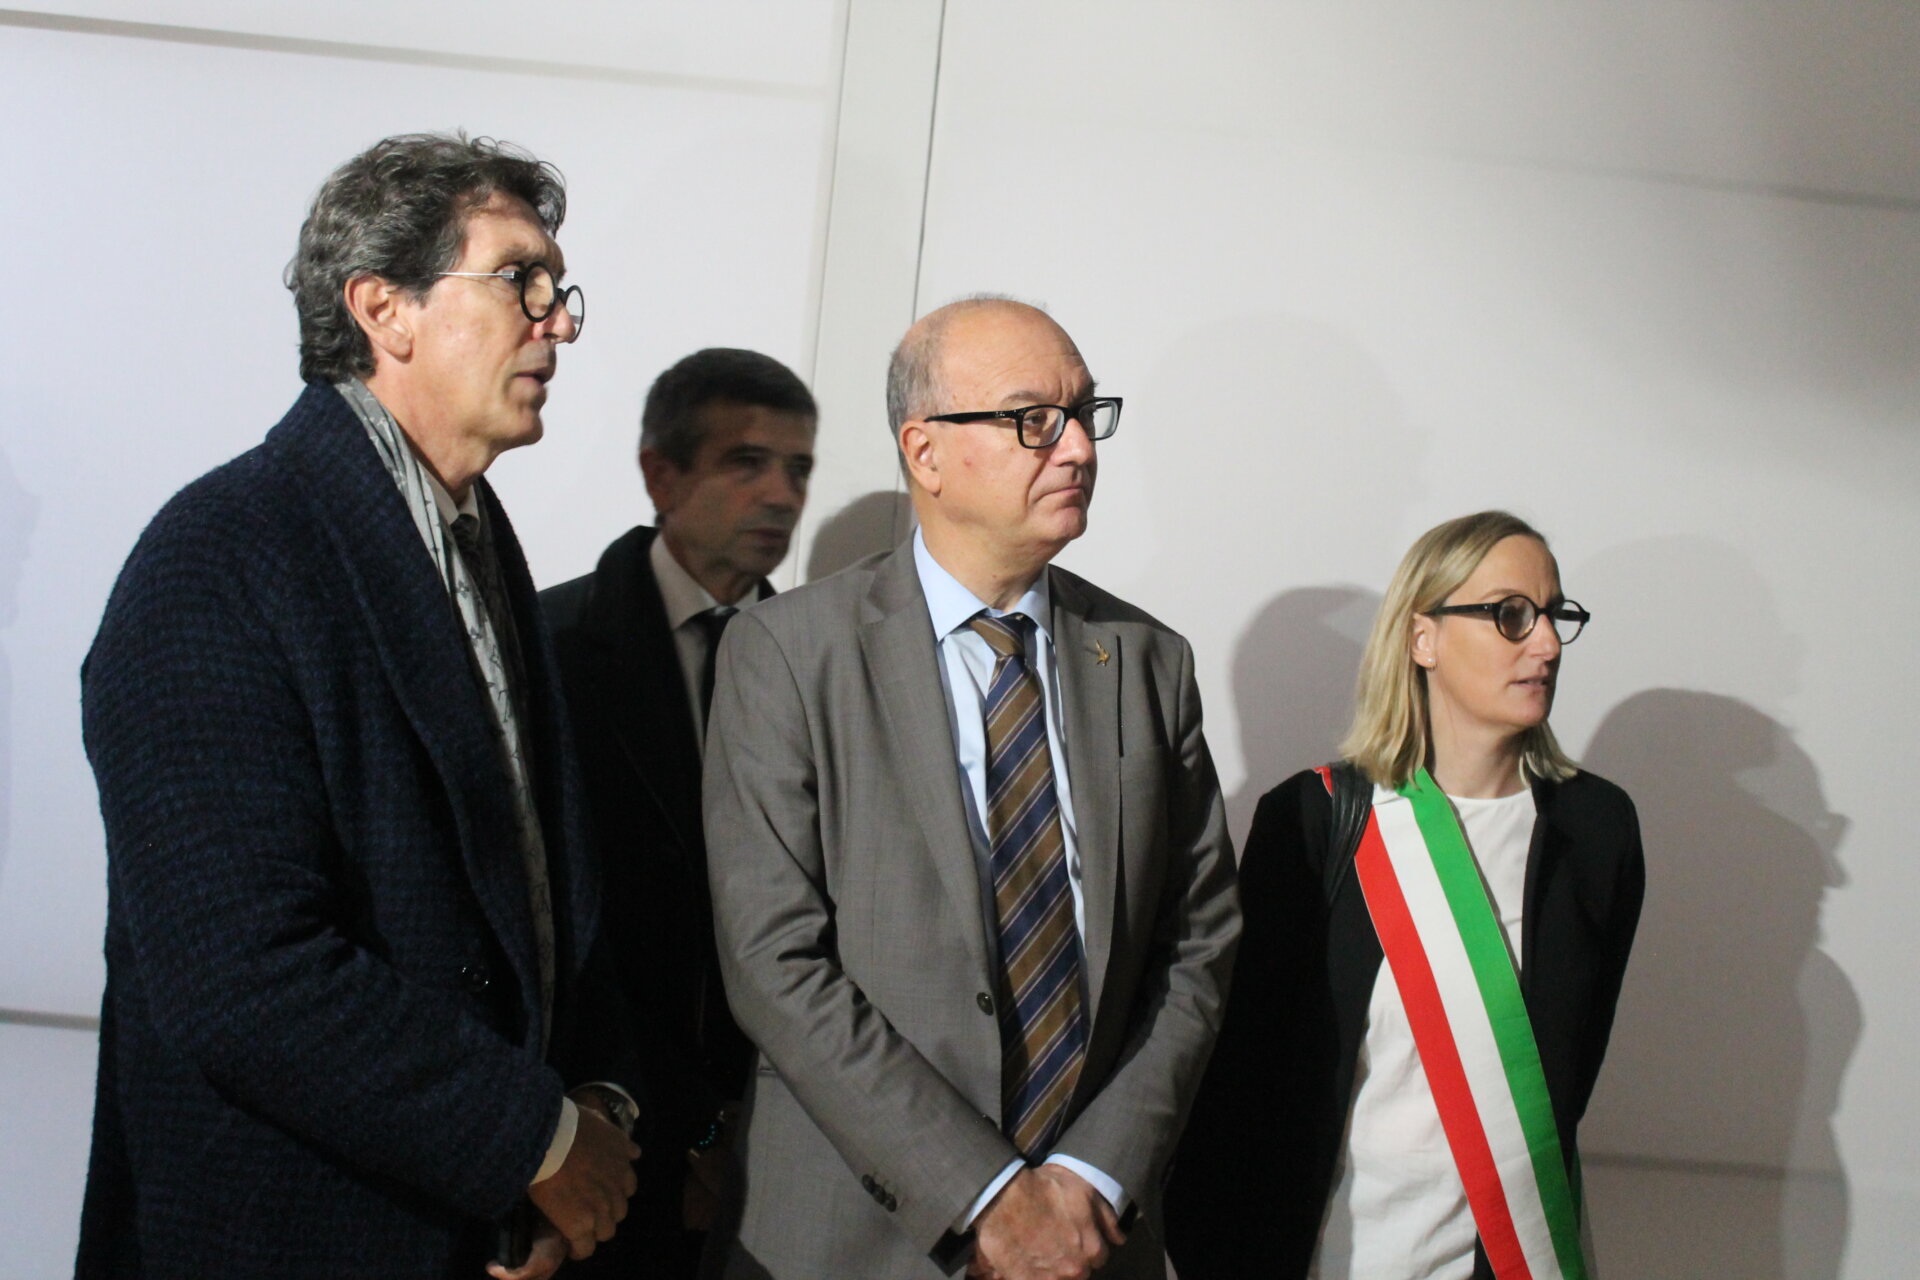 Da sinistra Giovanni Morale, ministro Valditara e il sindaco Narciso alla mostra